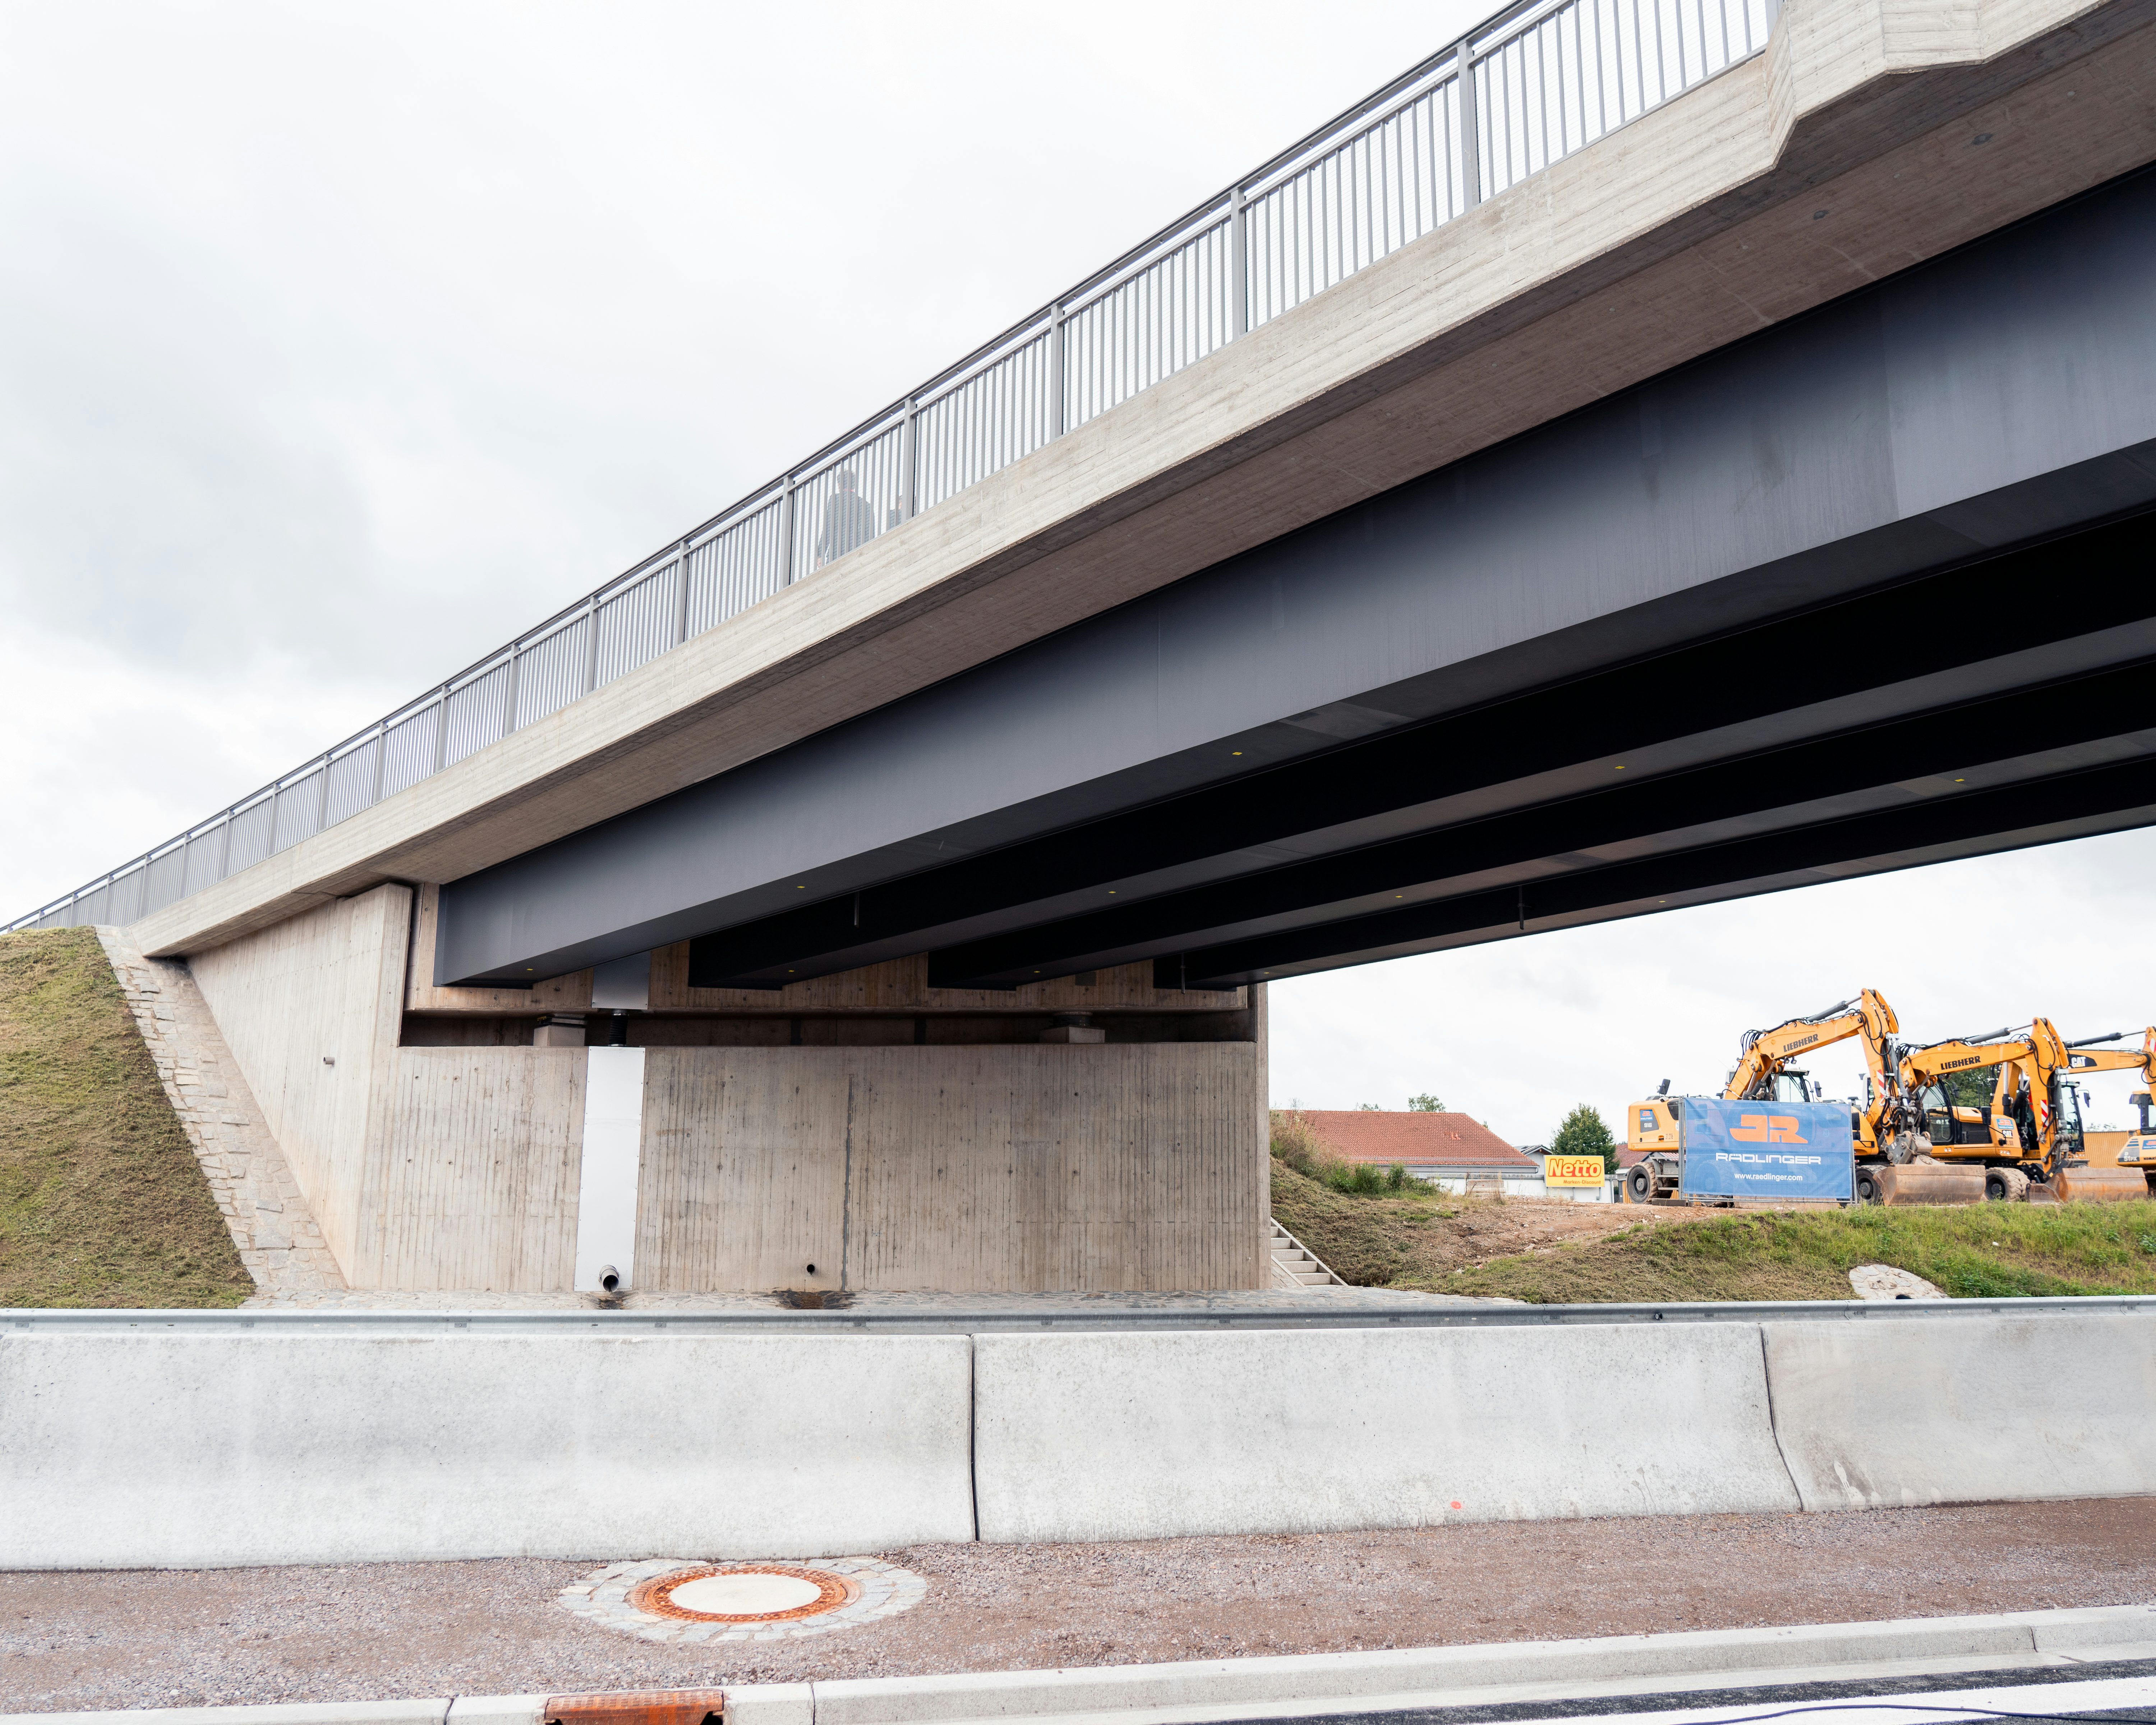 Freigabe B85 - Die neue Brücke mit Baustellenfahrzeugen im Hintergrund